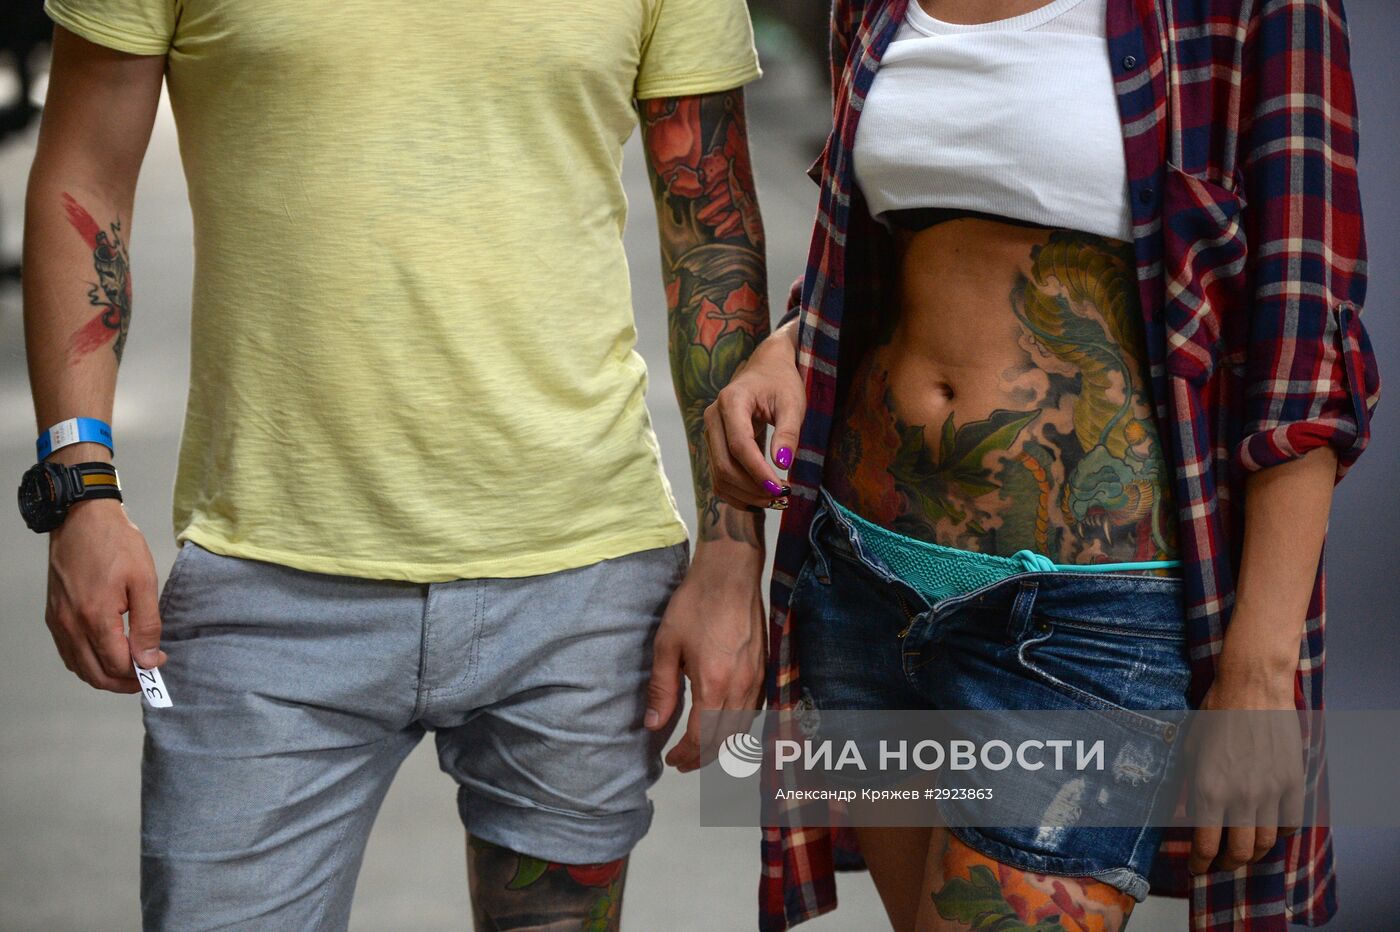 Международная "Сибирская тату-конвенция" в Новосибирской области